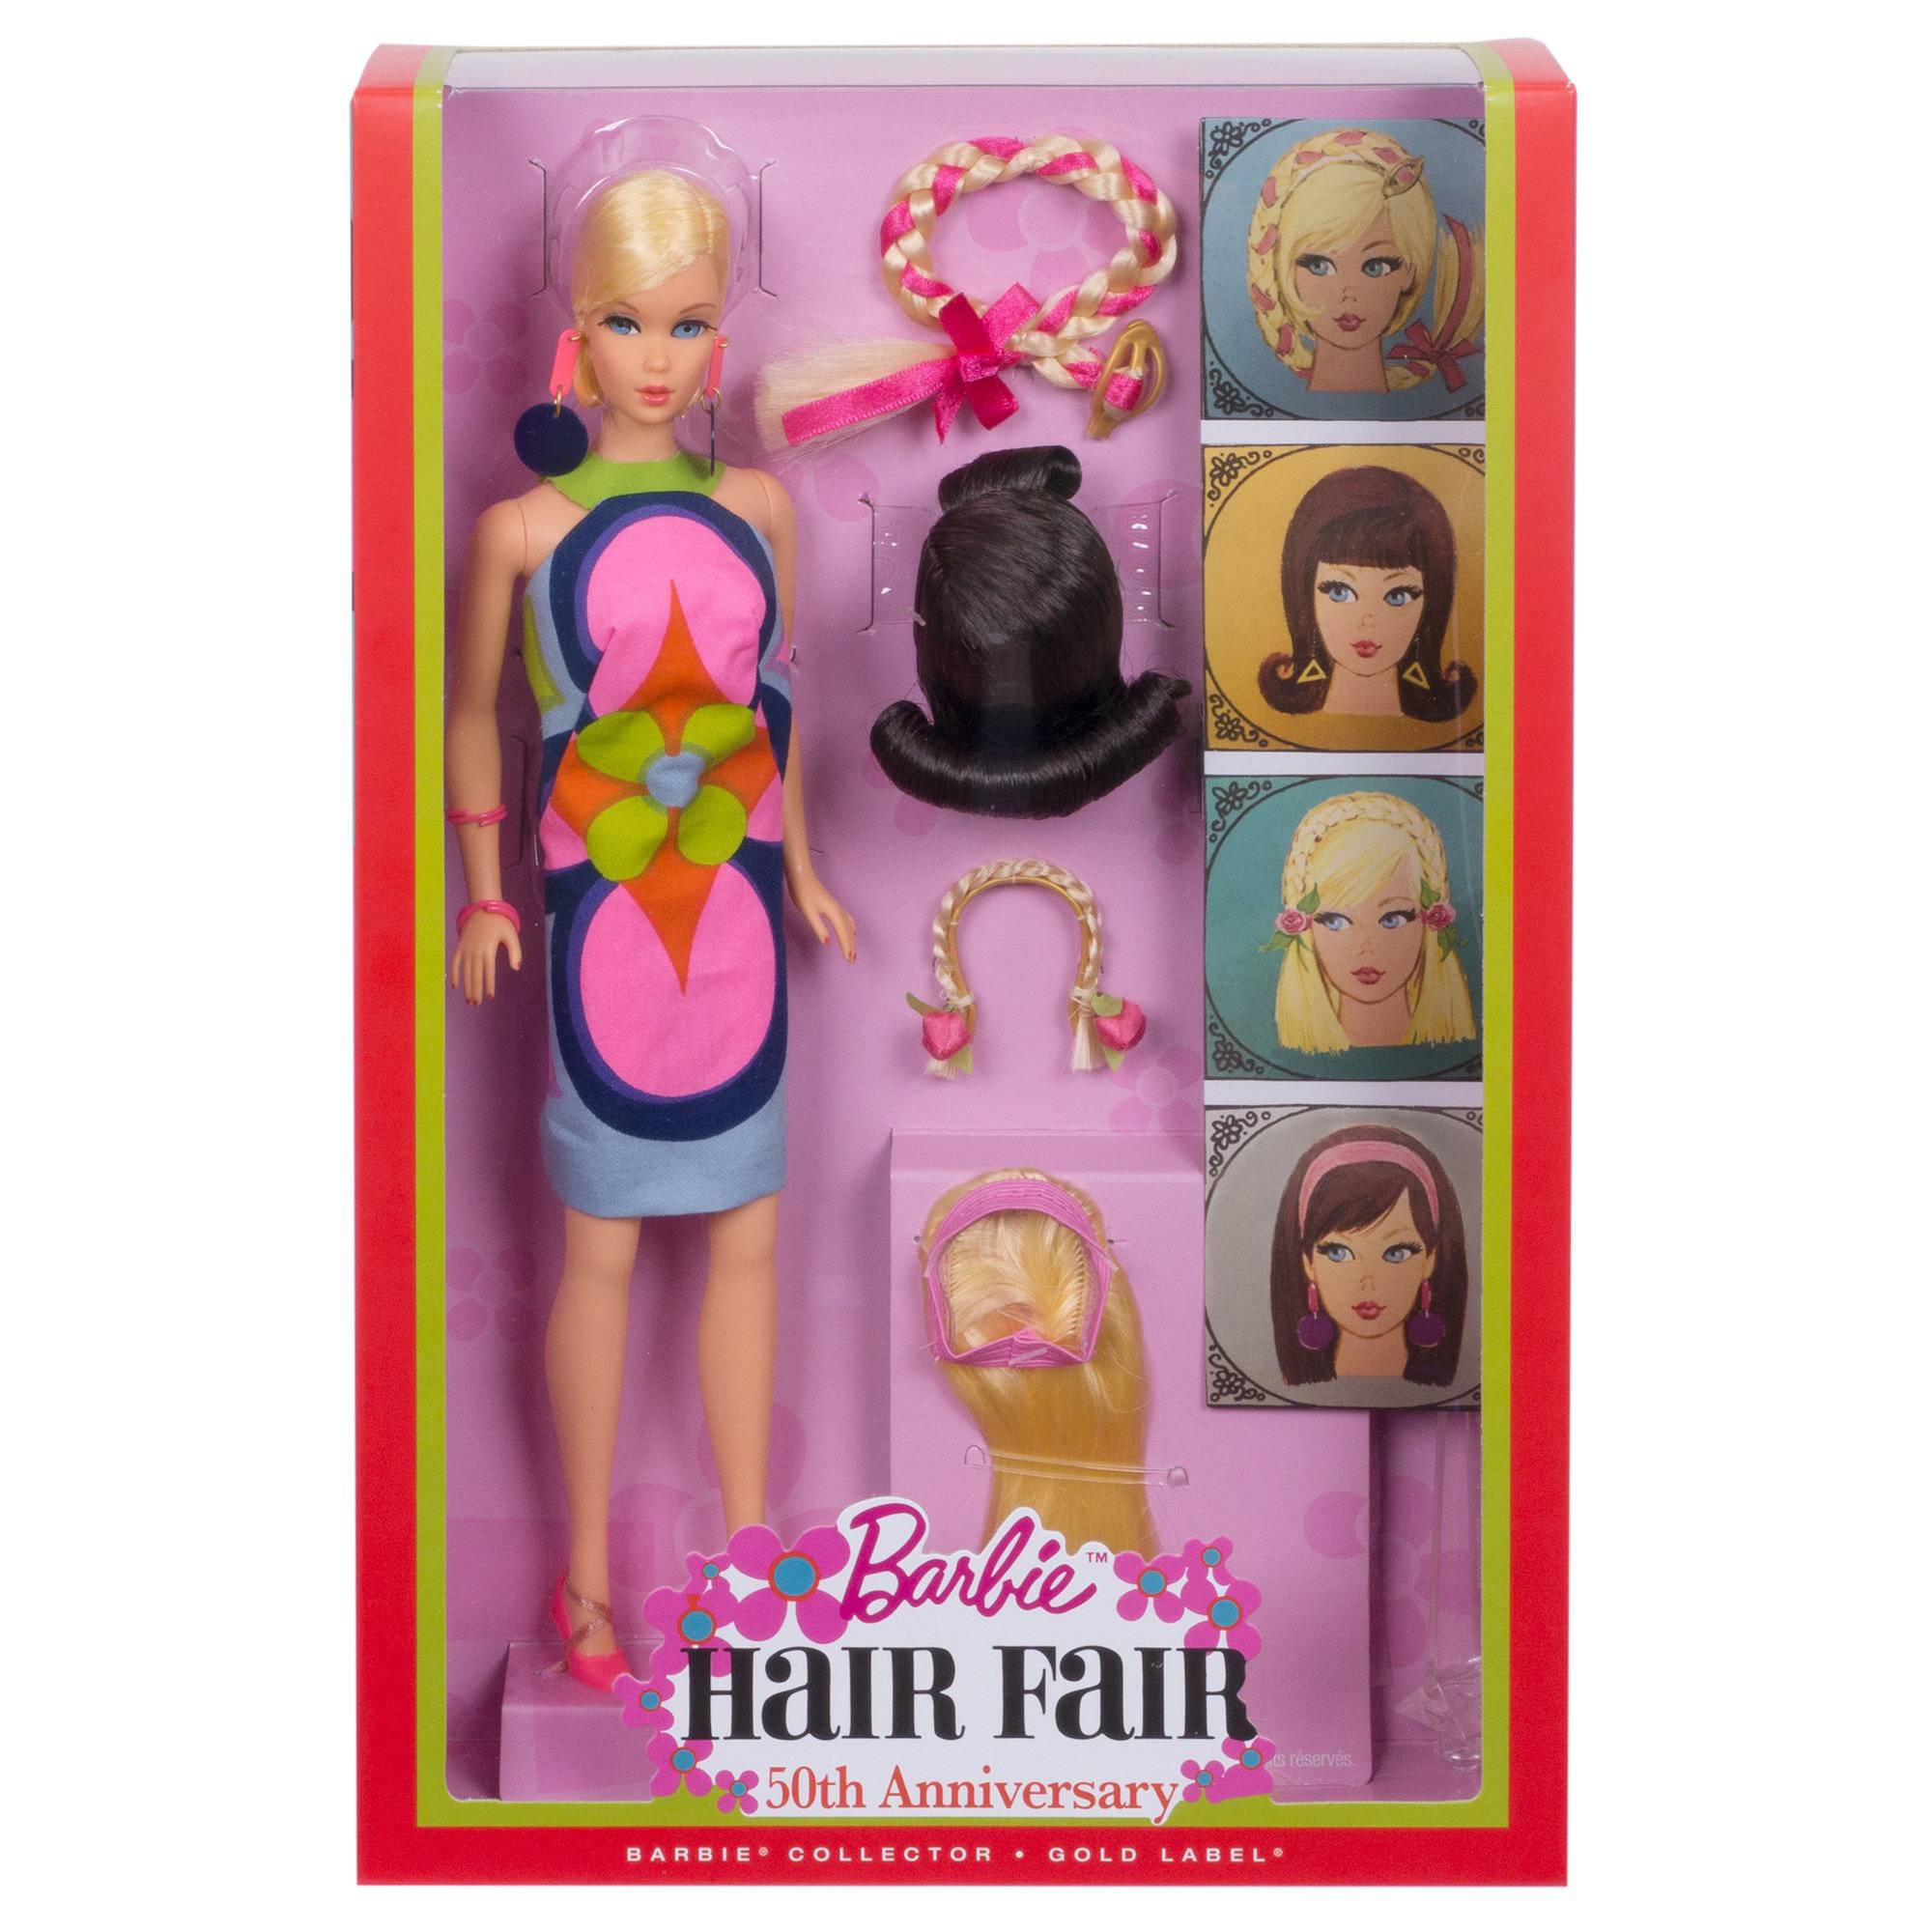 Barbie 50th Anniversary Hair Fair Doll 